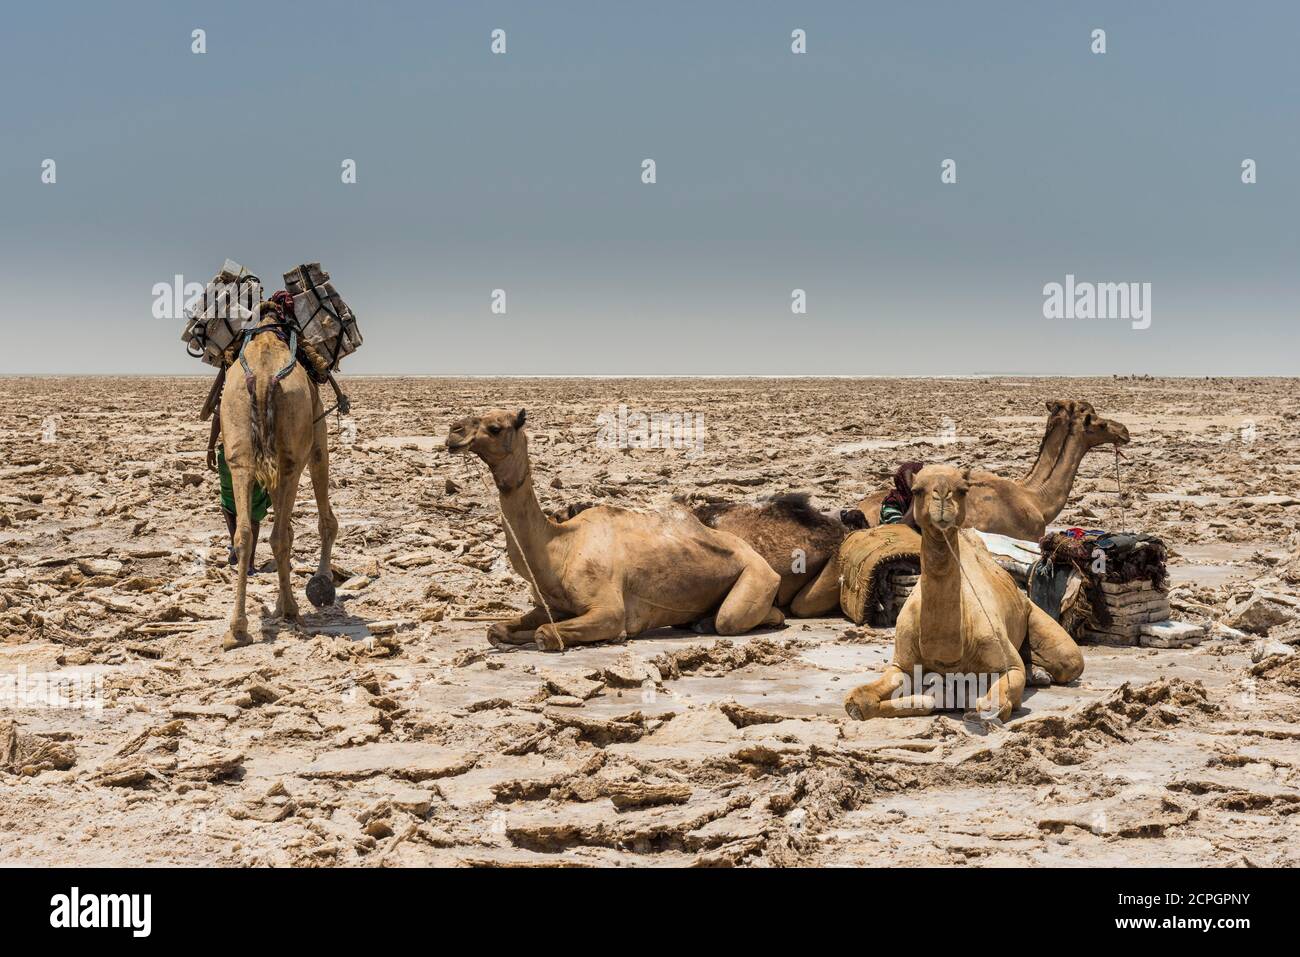 Les dromadaires se trouvent dans un lac sec de sel, sont chargés de plaques de sel, près de Dallol, la dépression de Danakil, la région d'Afar, l'Éthiopie, l'Afrique Banque D'Images